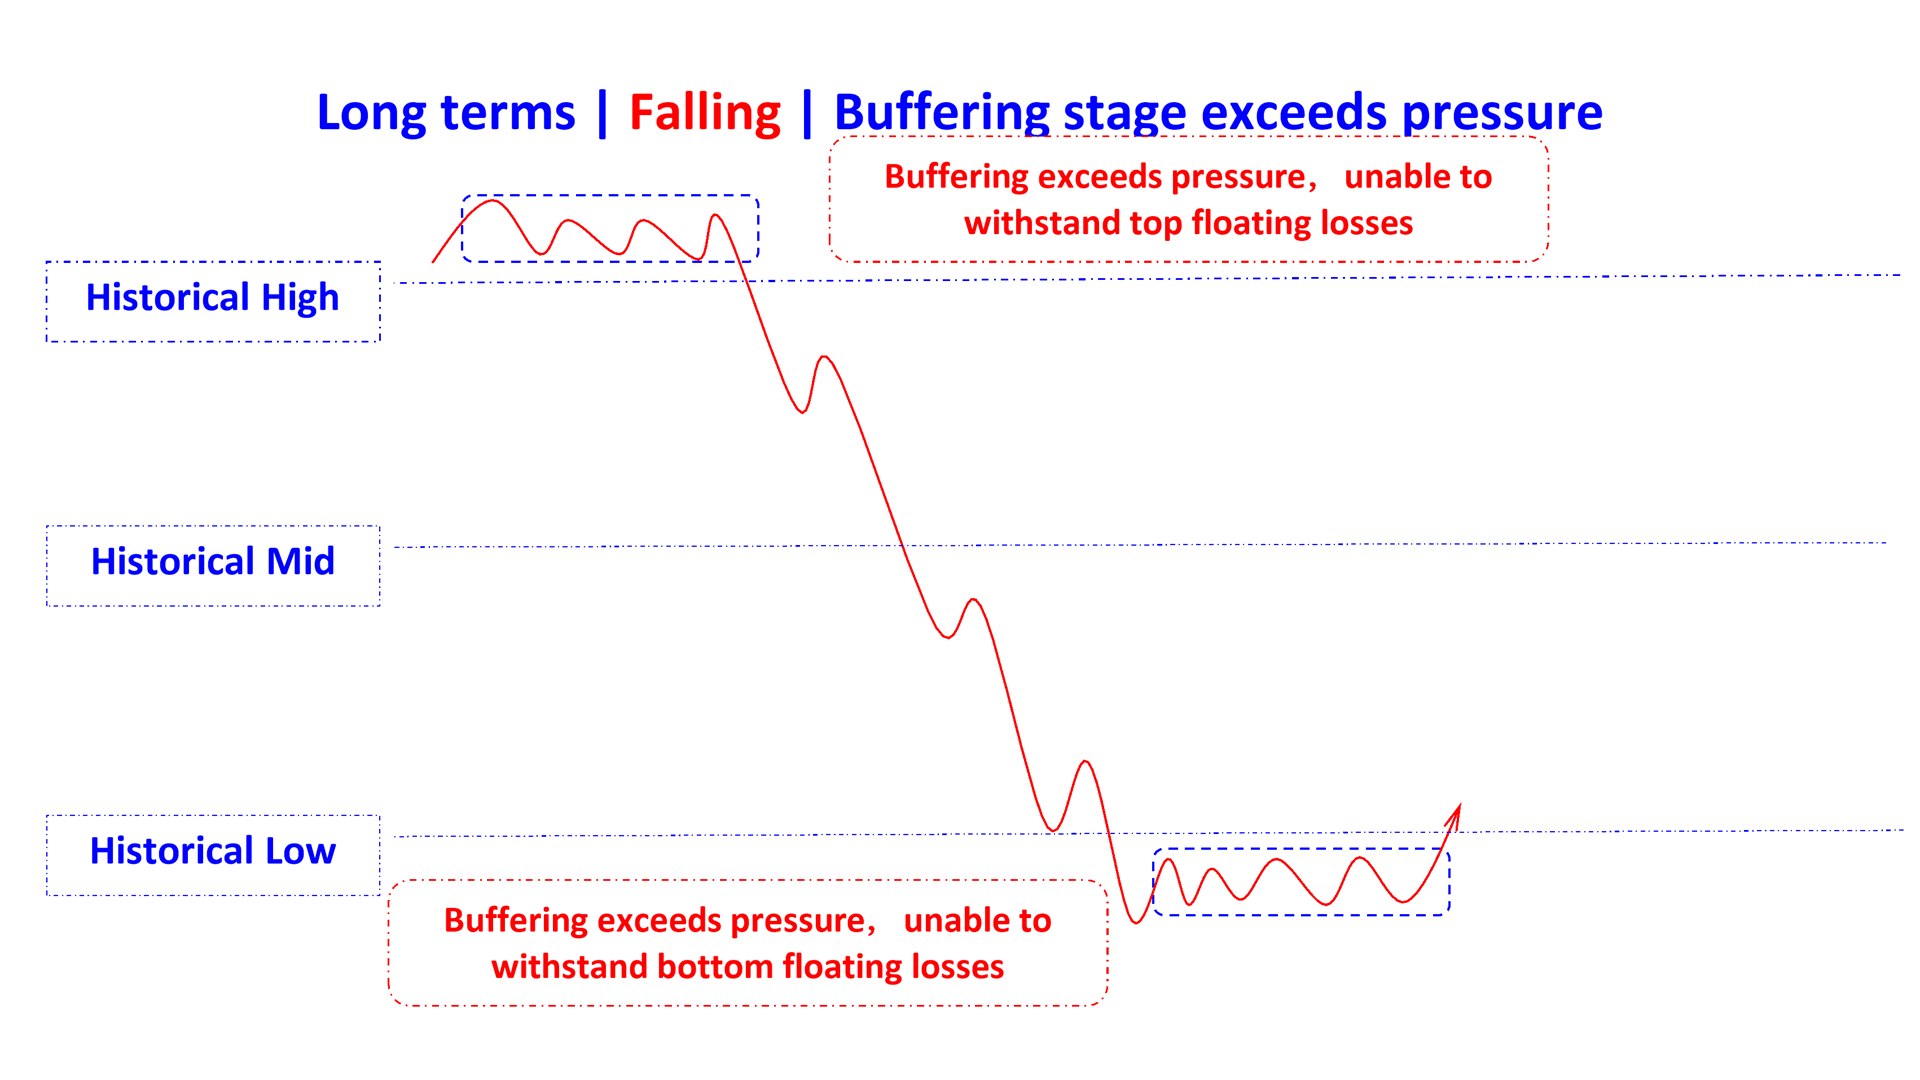 buffering stage exceeds pressure in falling en